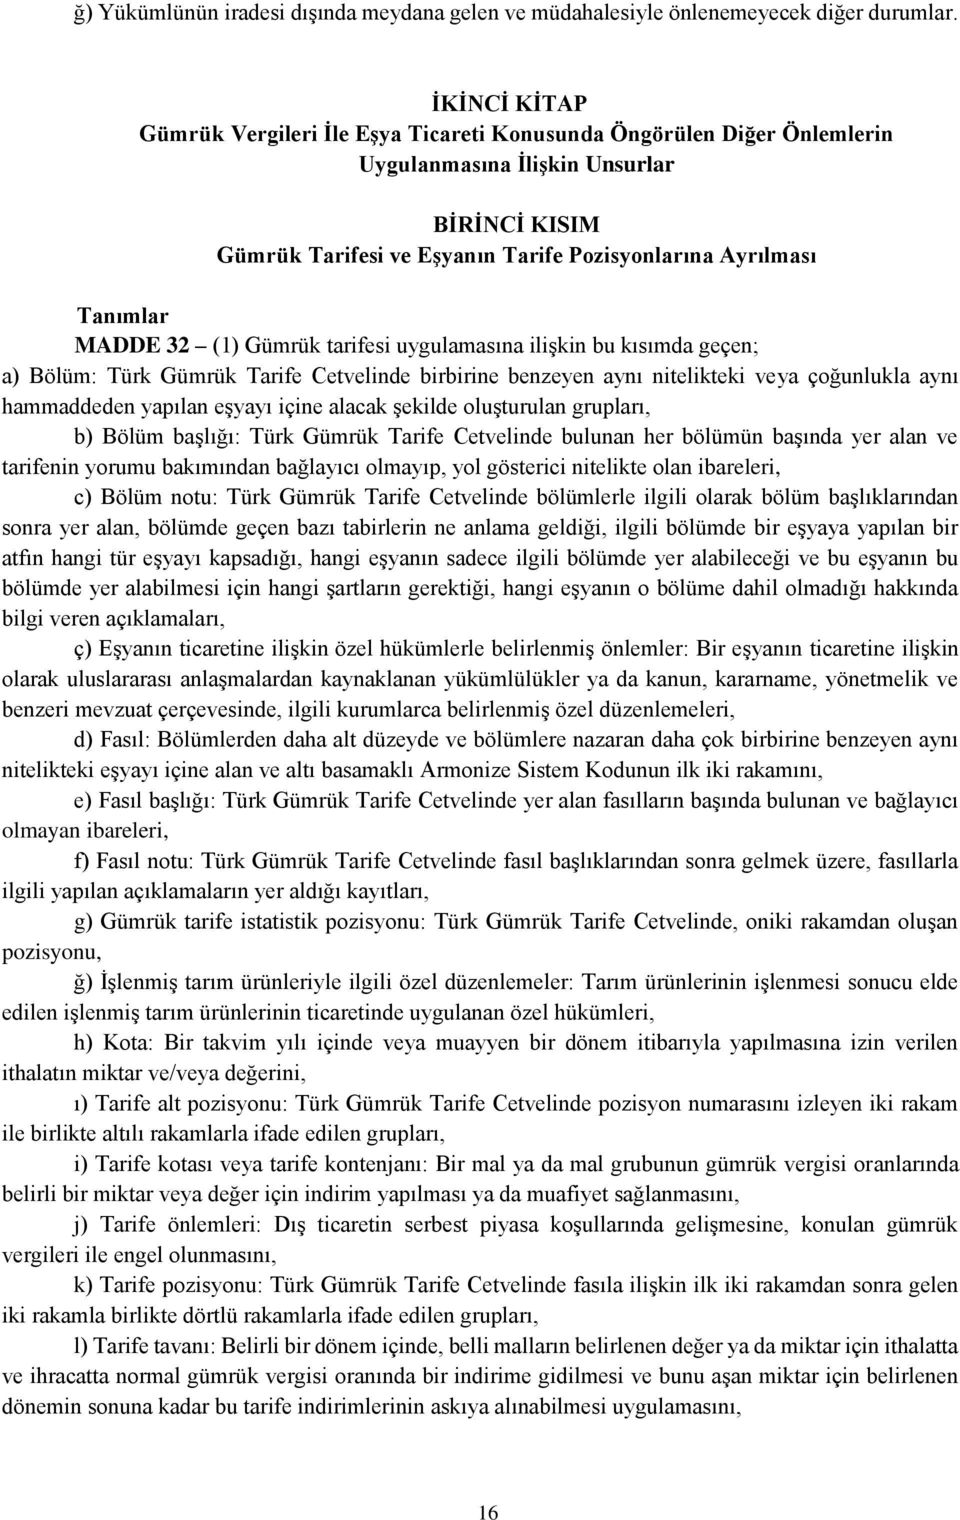 MADDE 32 (1) Gümrük tarifesi uygulamasına ilişkin bu kısımda geçen; a) Bölüm: Türk Gümrük Tarife Cetvelinde birbirine benzeyen aynı nitelikteki veya çoğunlukla aynı hammaddeden yapılan eşyayı içine